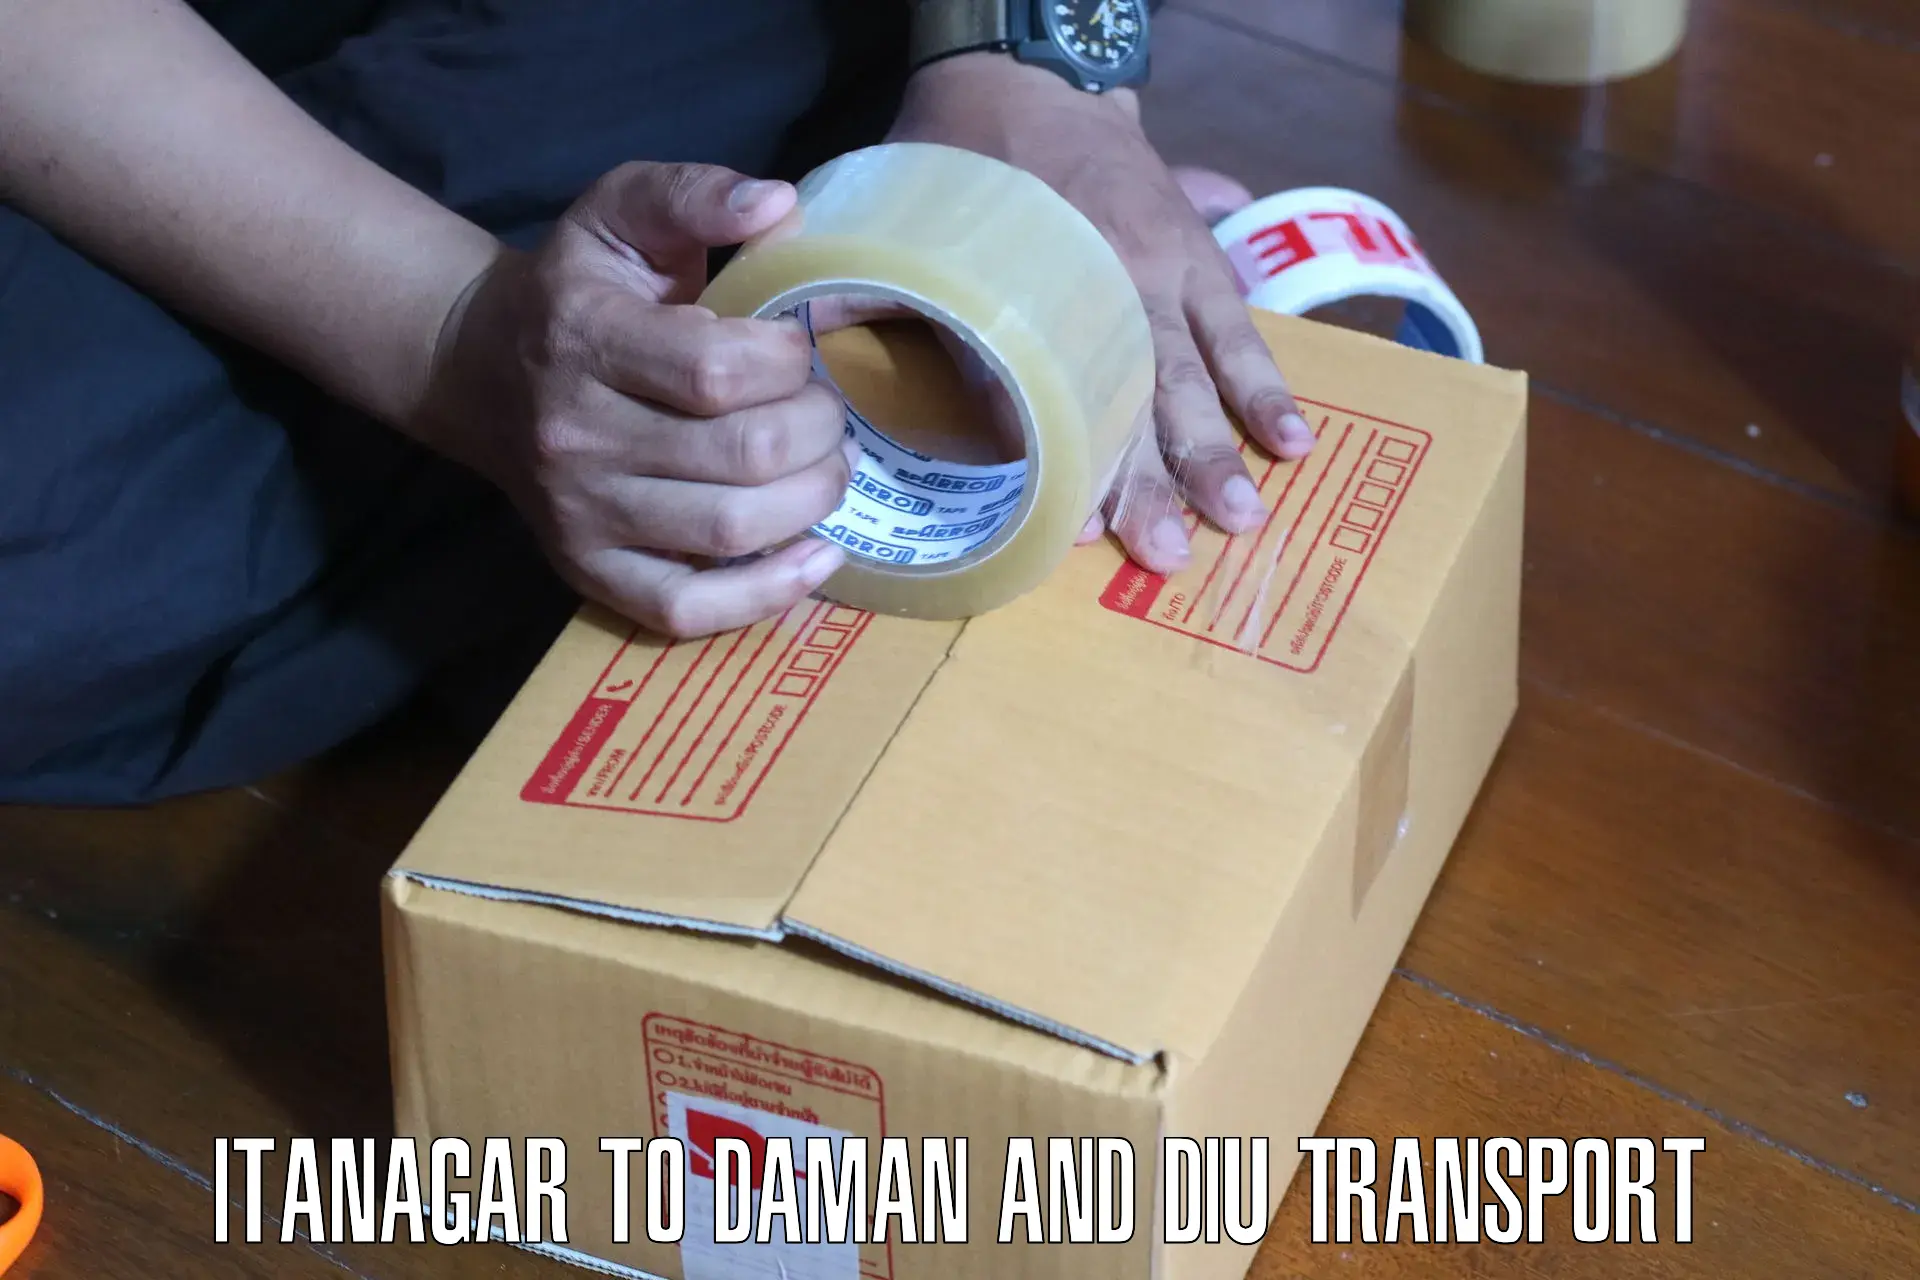 Nearest transport service Itanagar to Daman and Diu